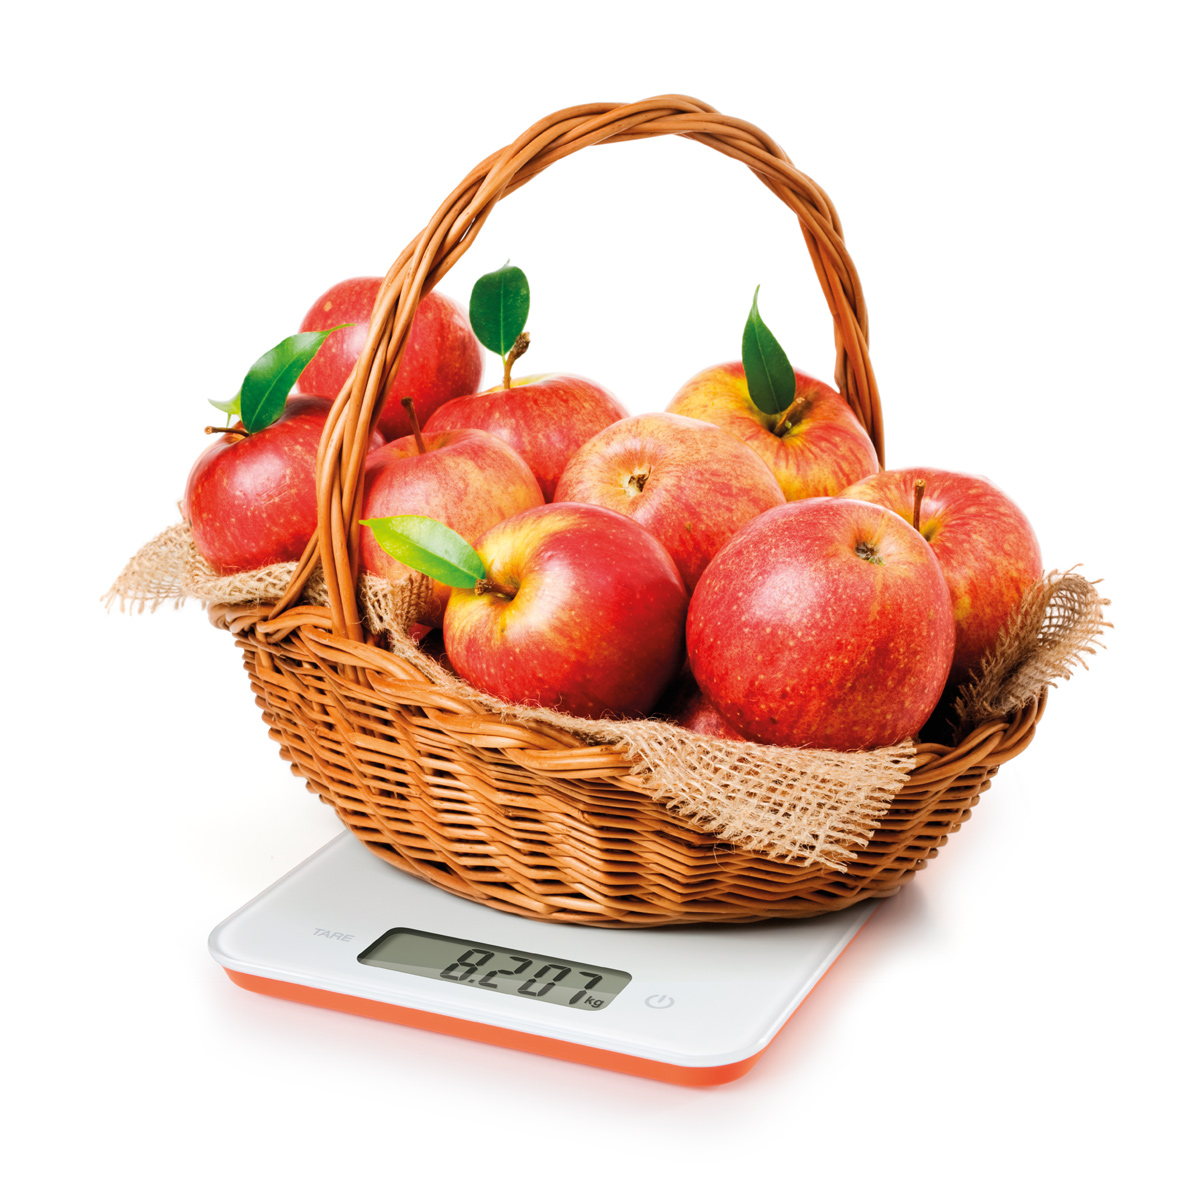 Digitální kuchyňská váha ACCURA 15,0 kg